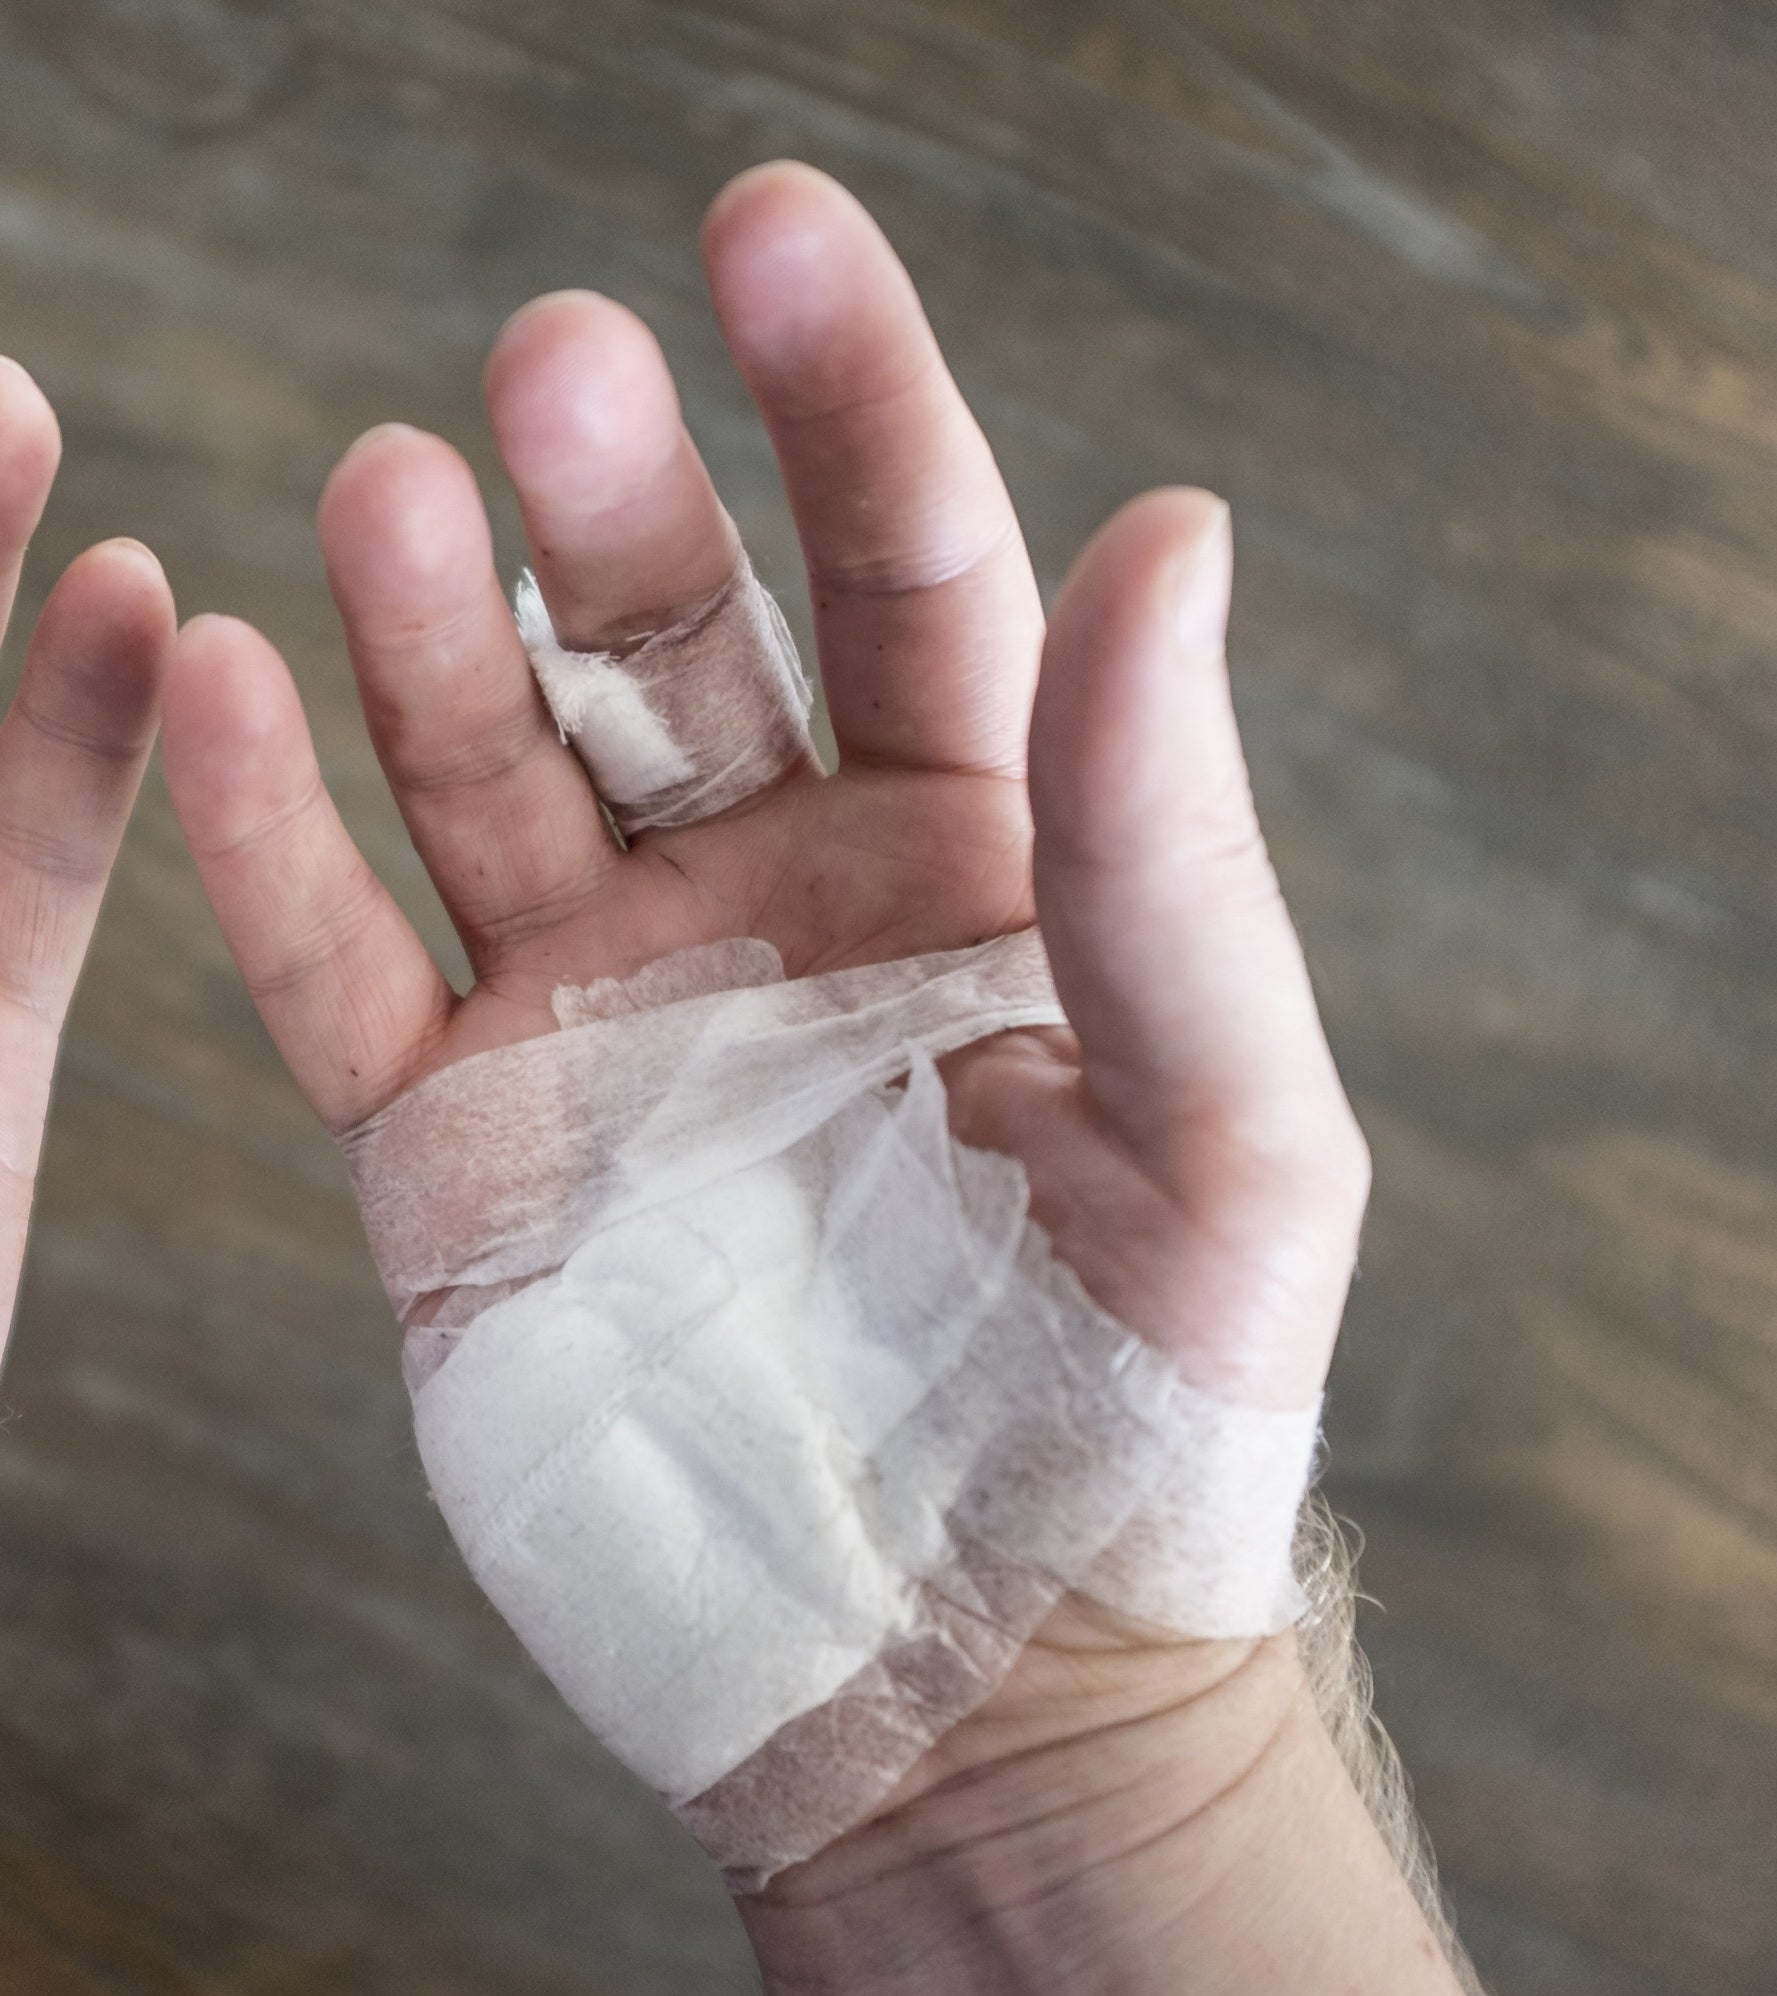 bandaged hand